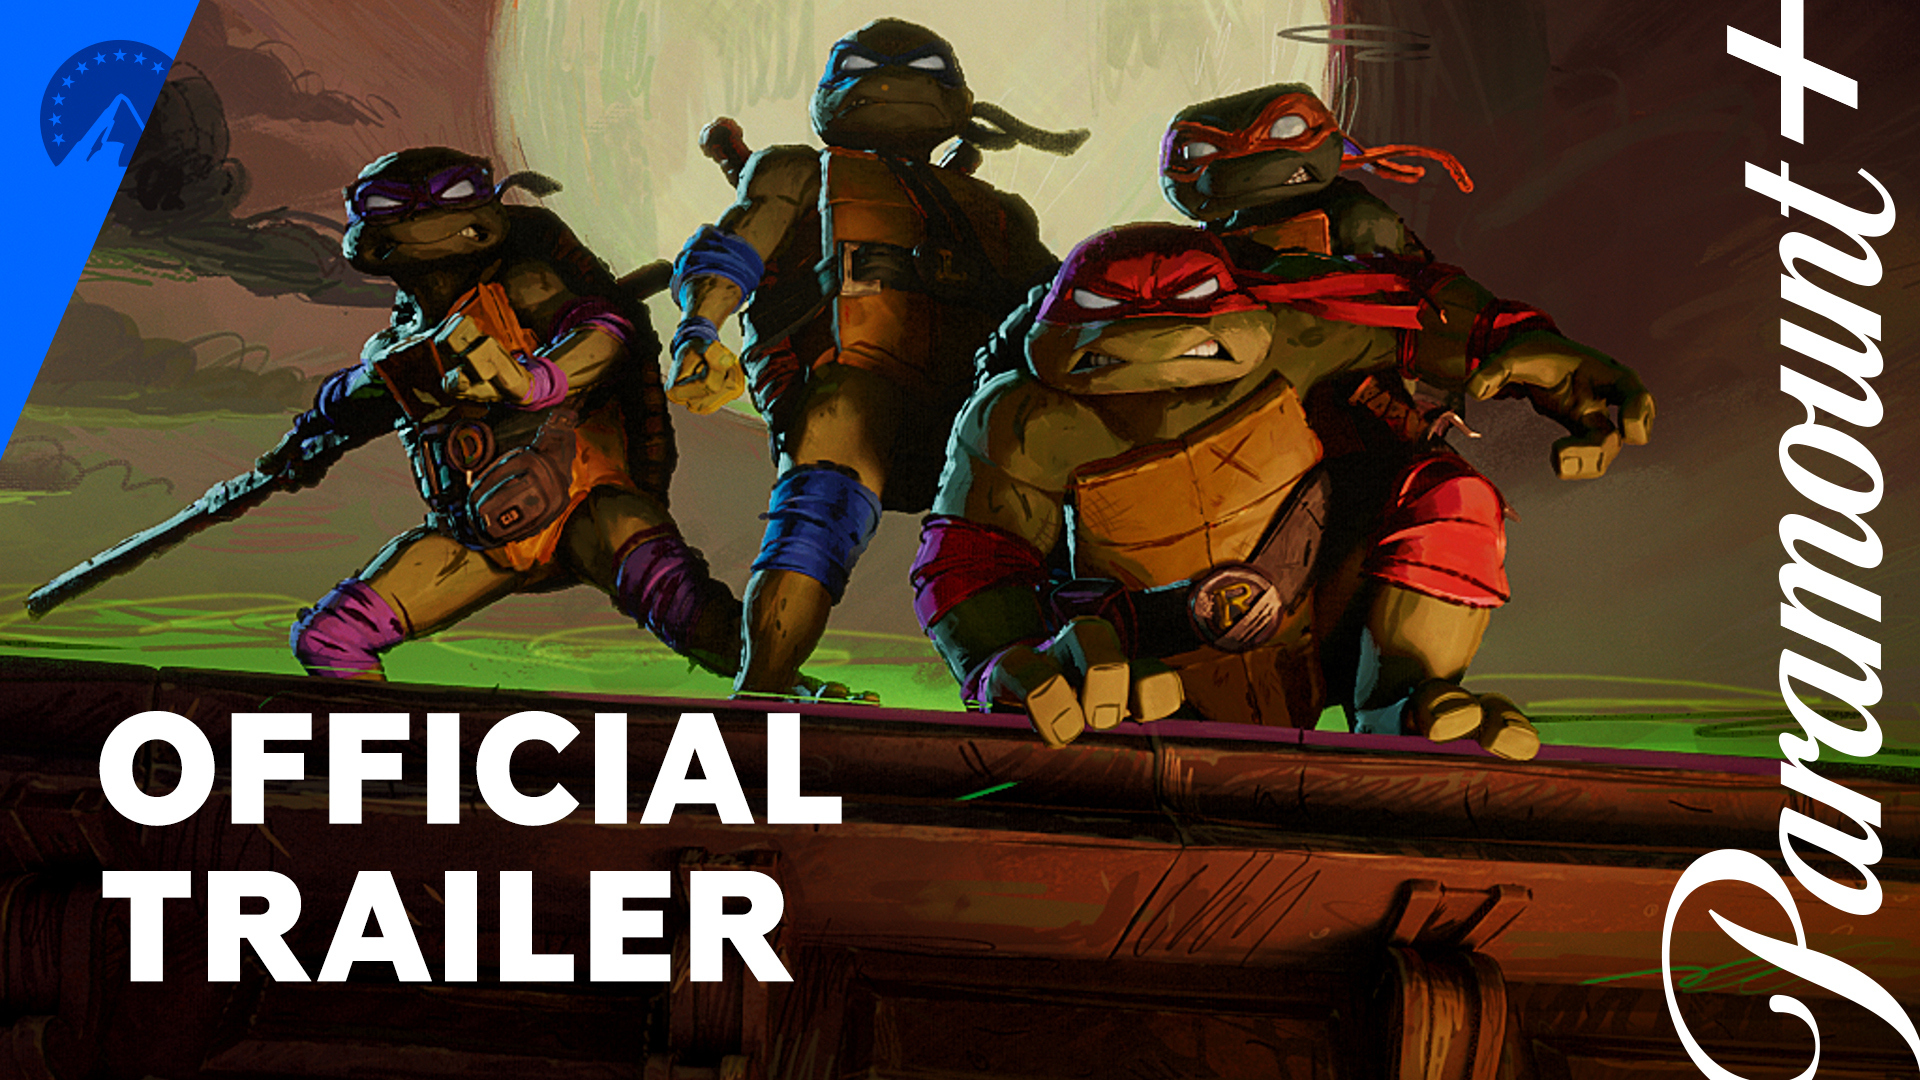 Teenage Mutant Ninja Turtles' trailer